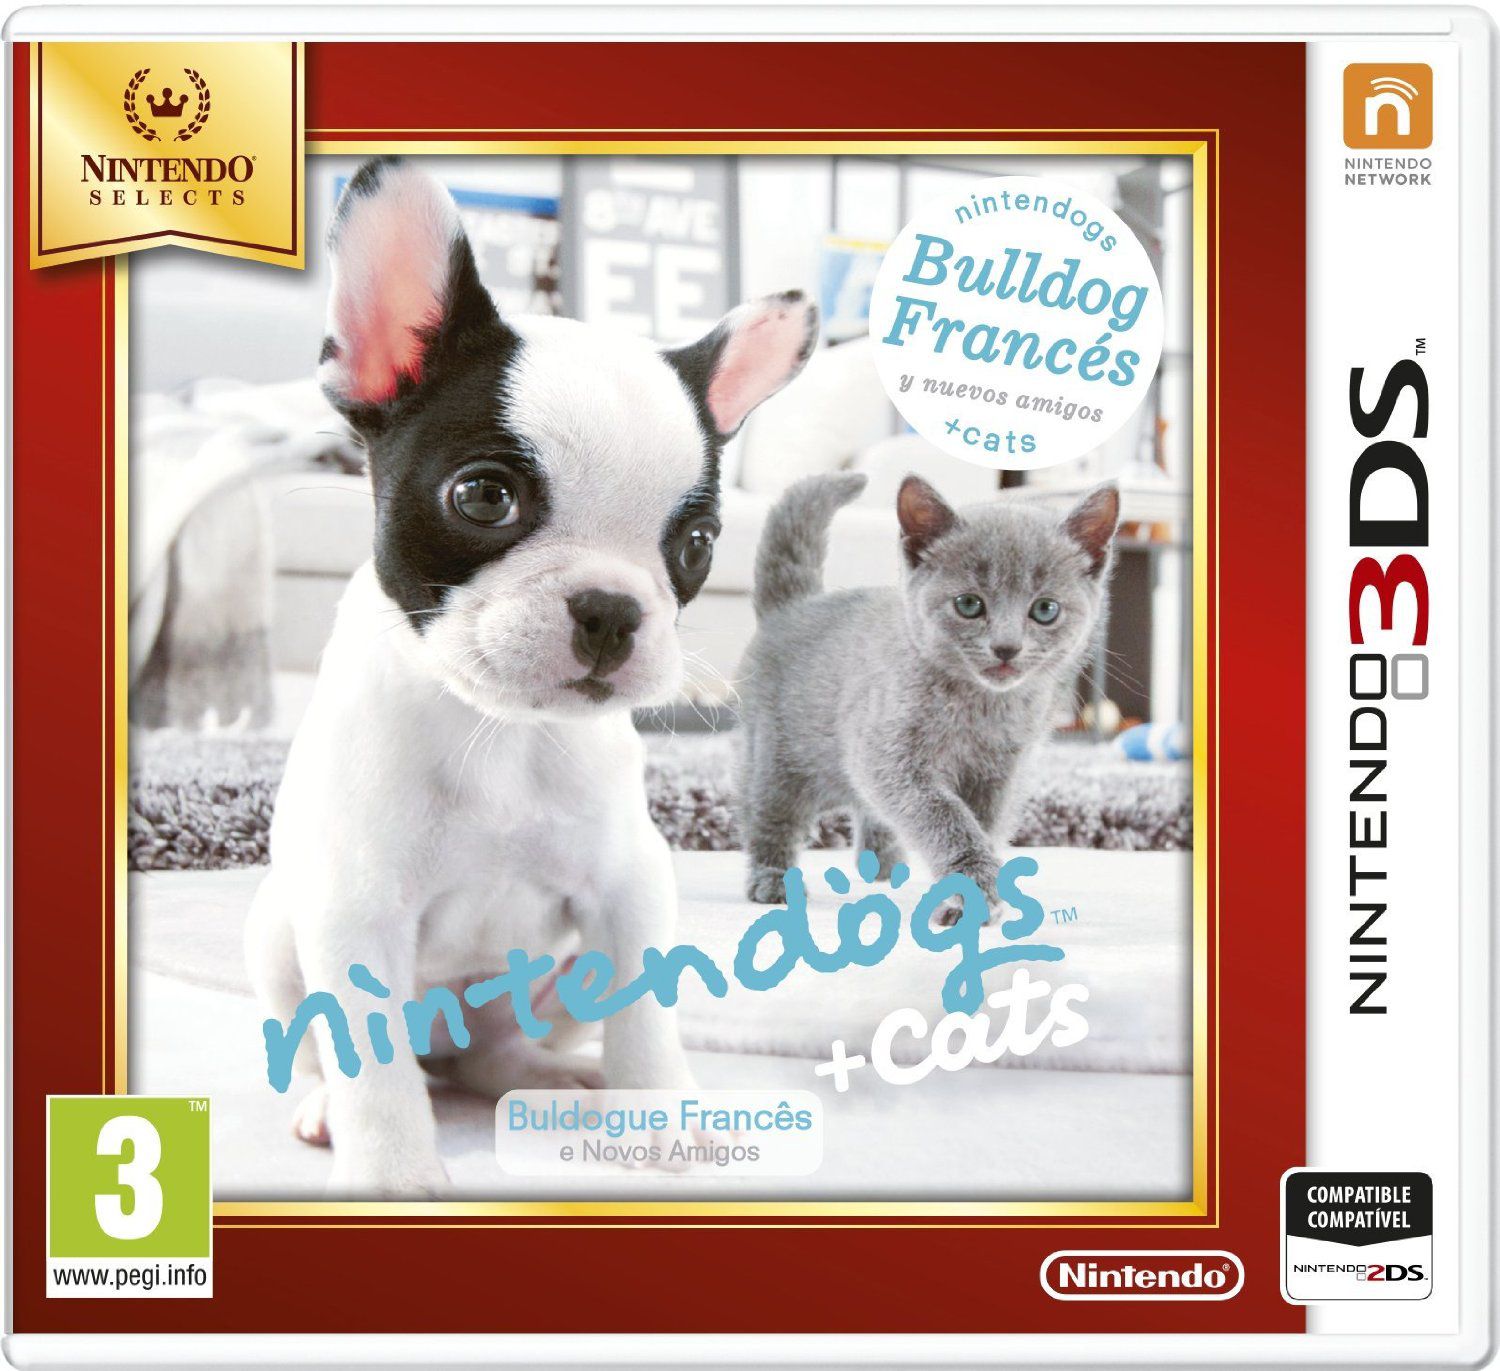 Nintendogs Gatos Bulldog Selects 3ds